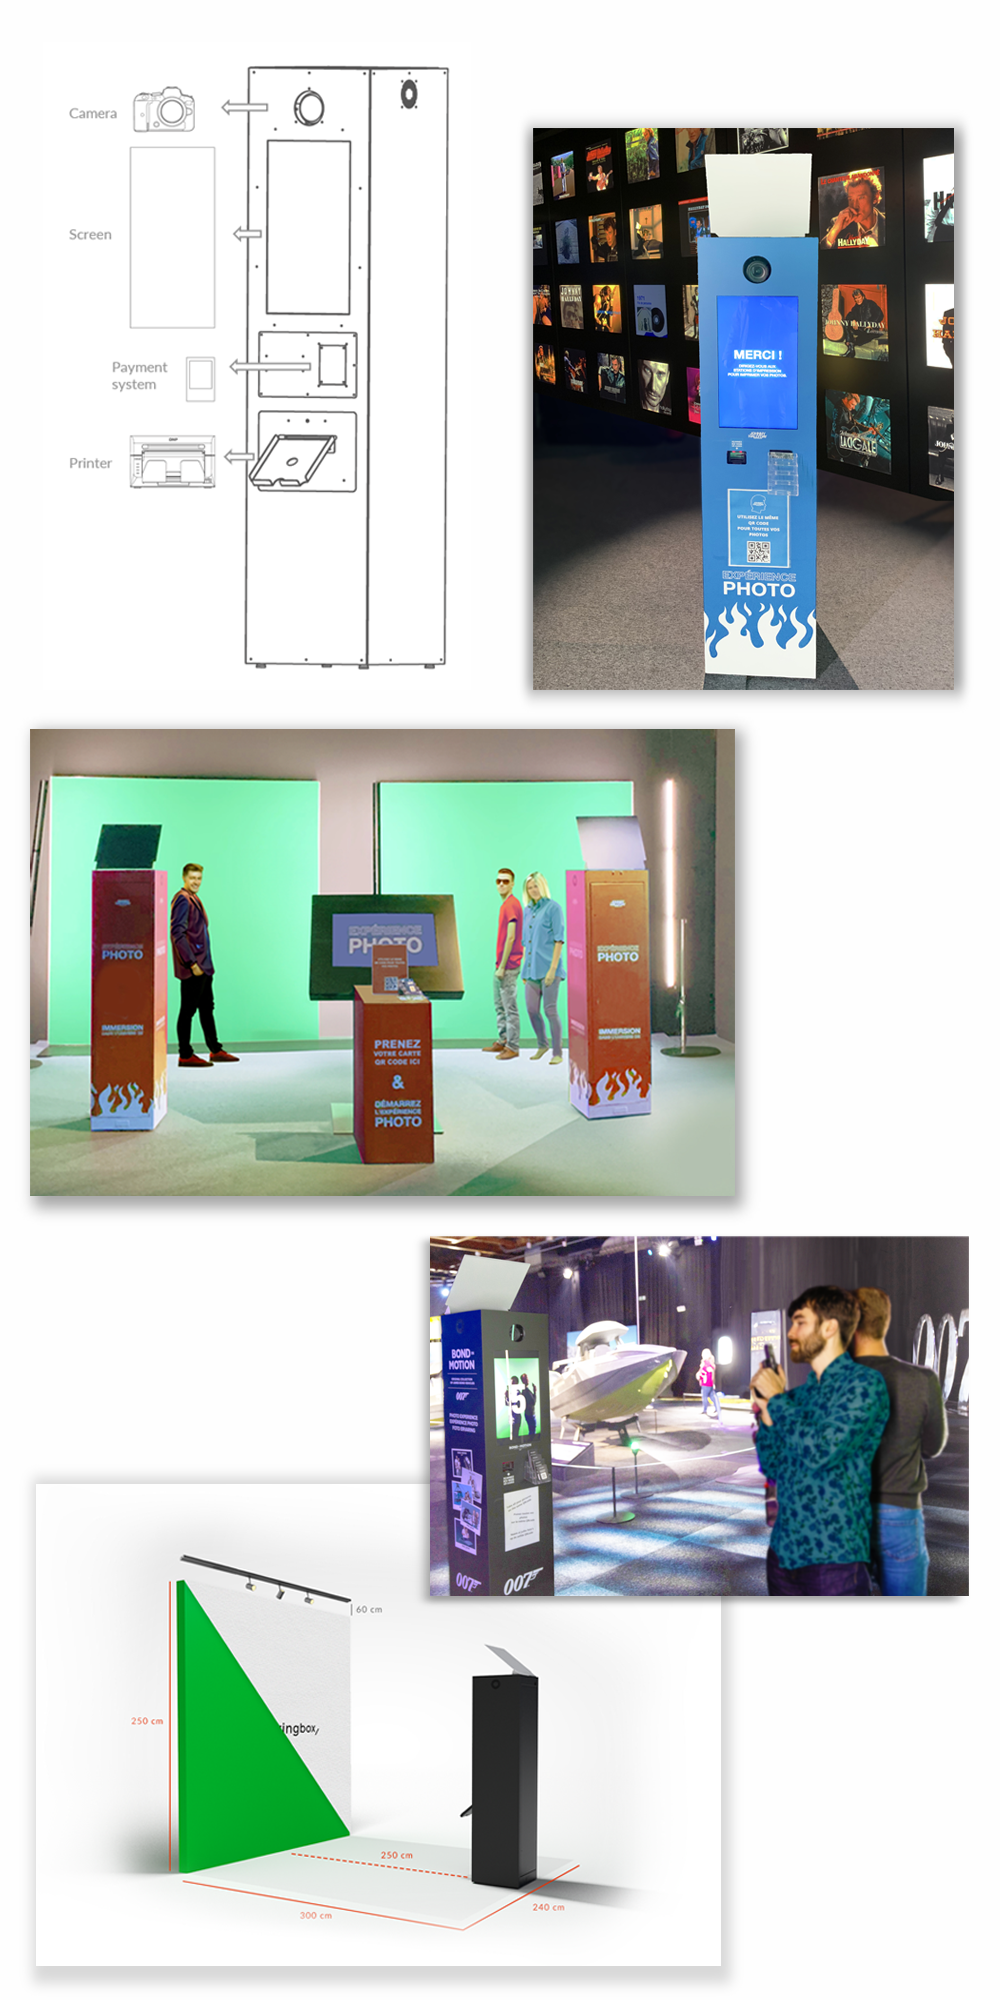 Le photobooth du kiosque en collage